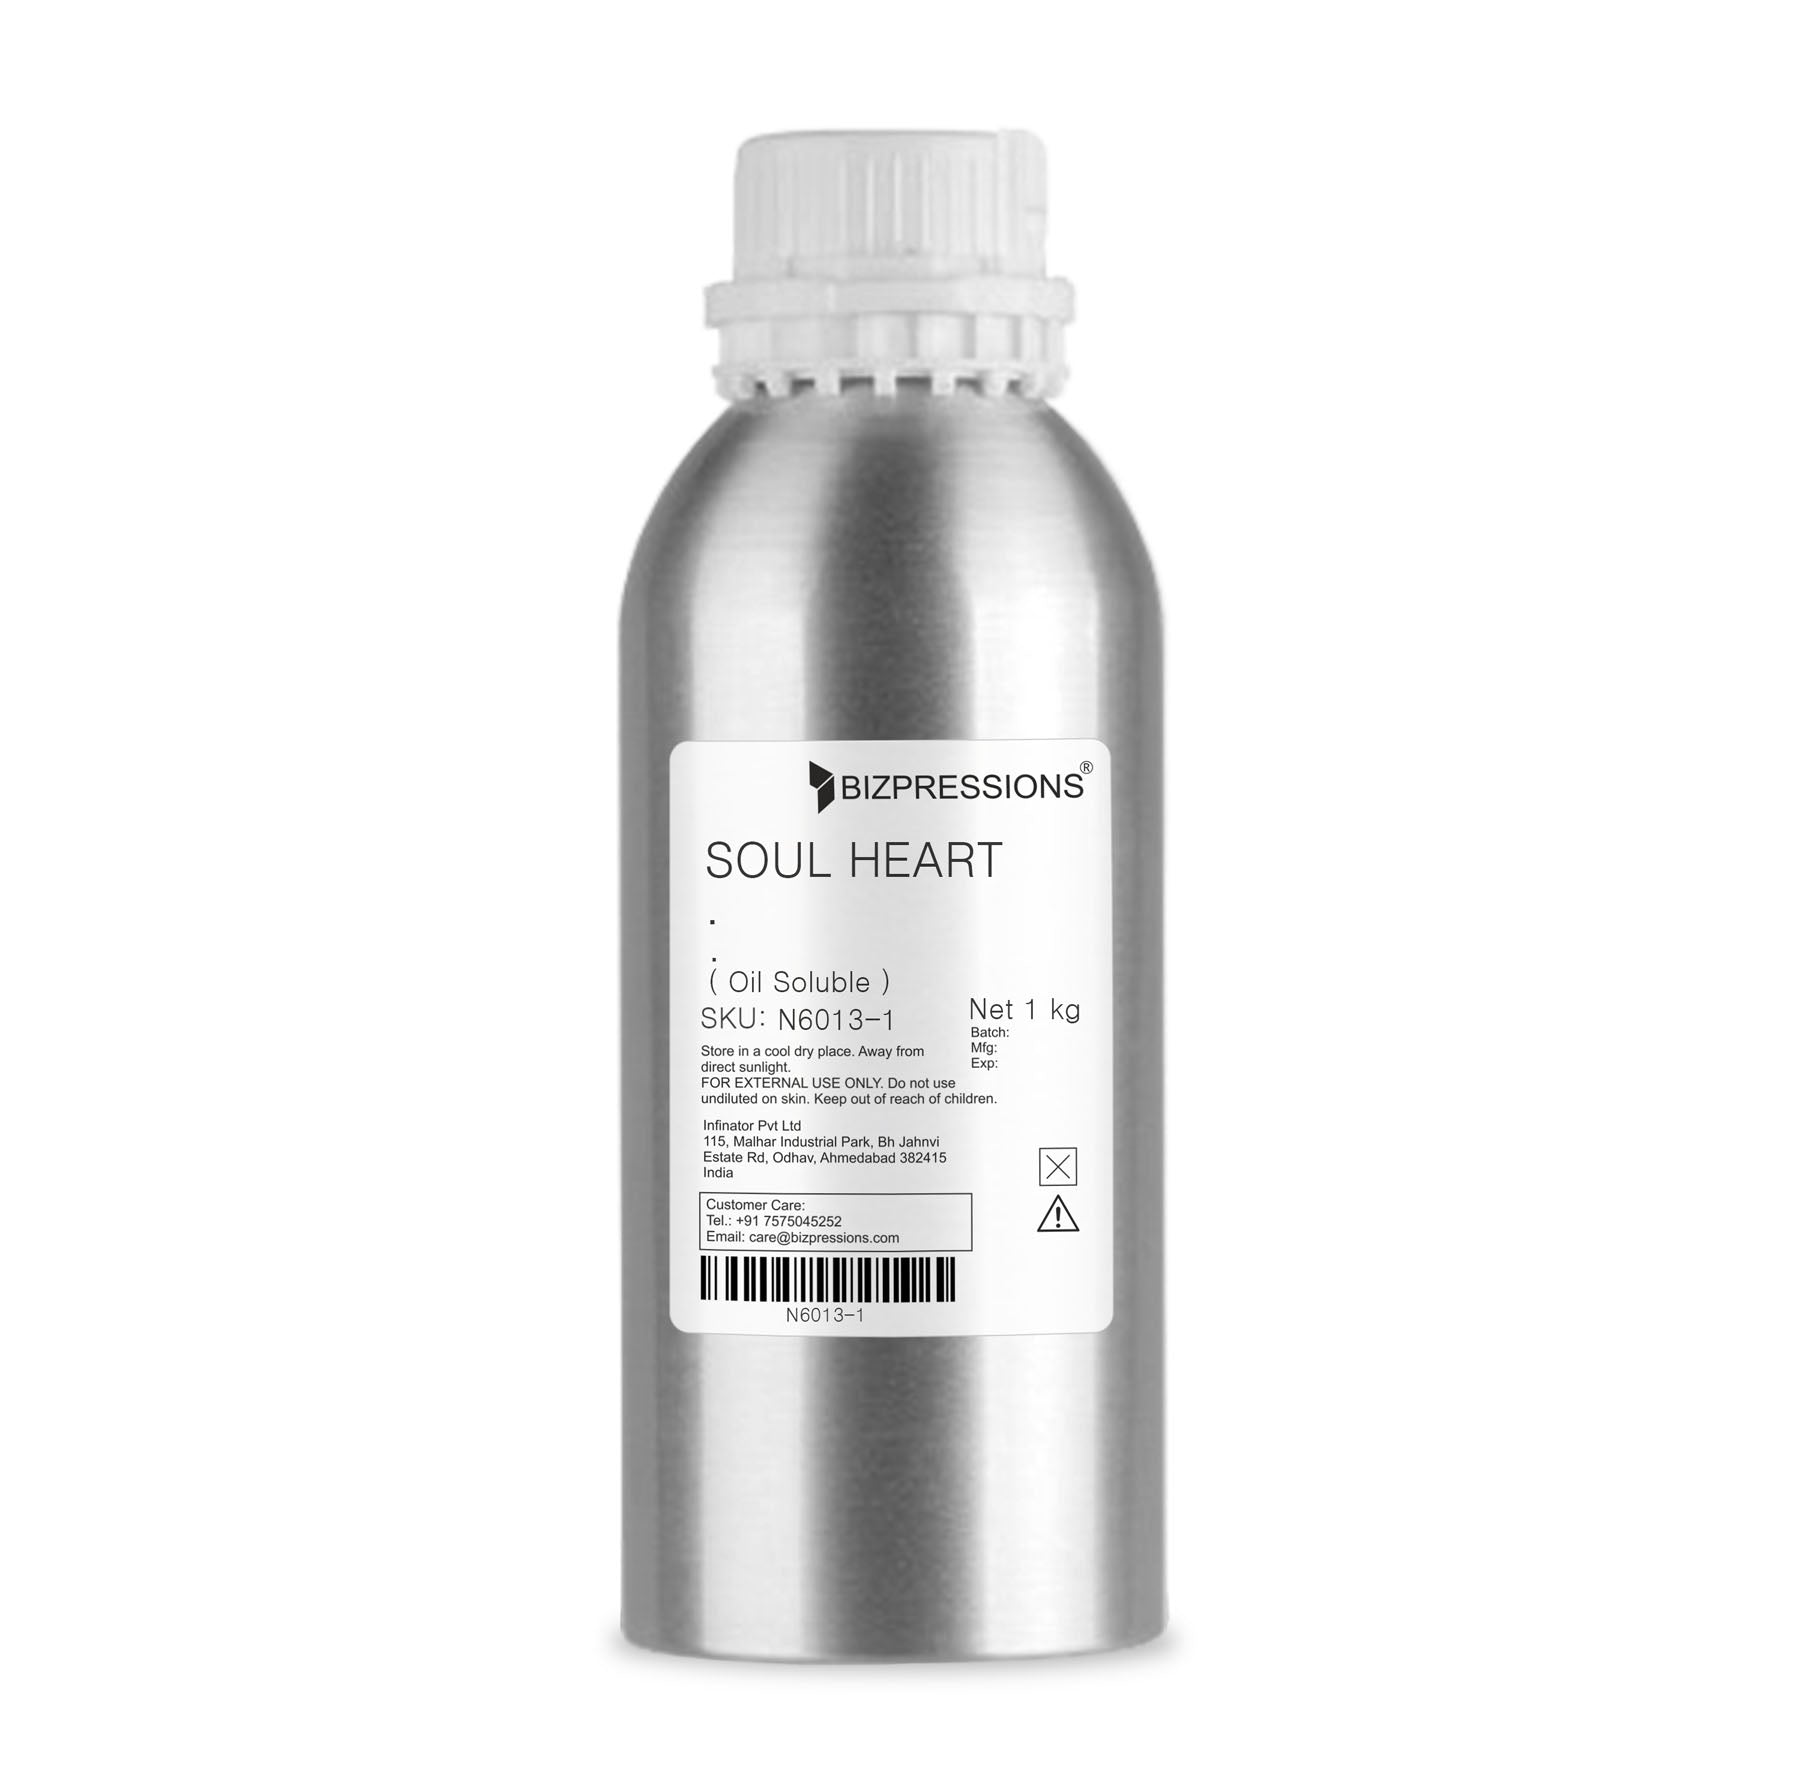 SOUL HEART - Fragrance ( Oil Soluble ) - 1 kg